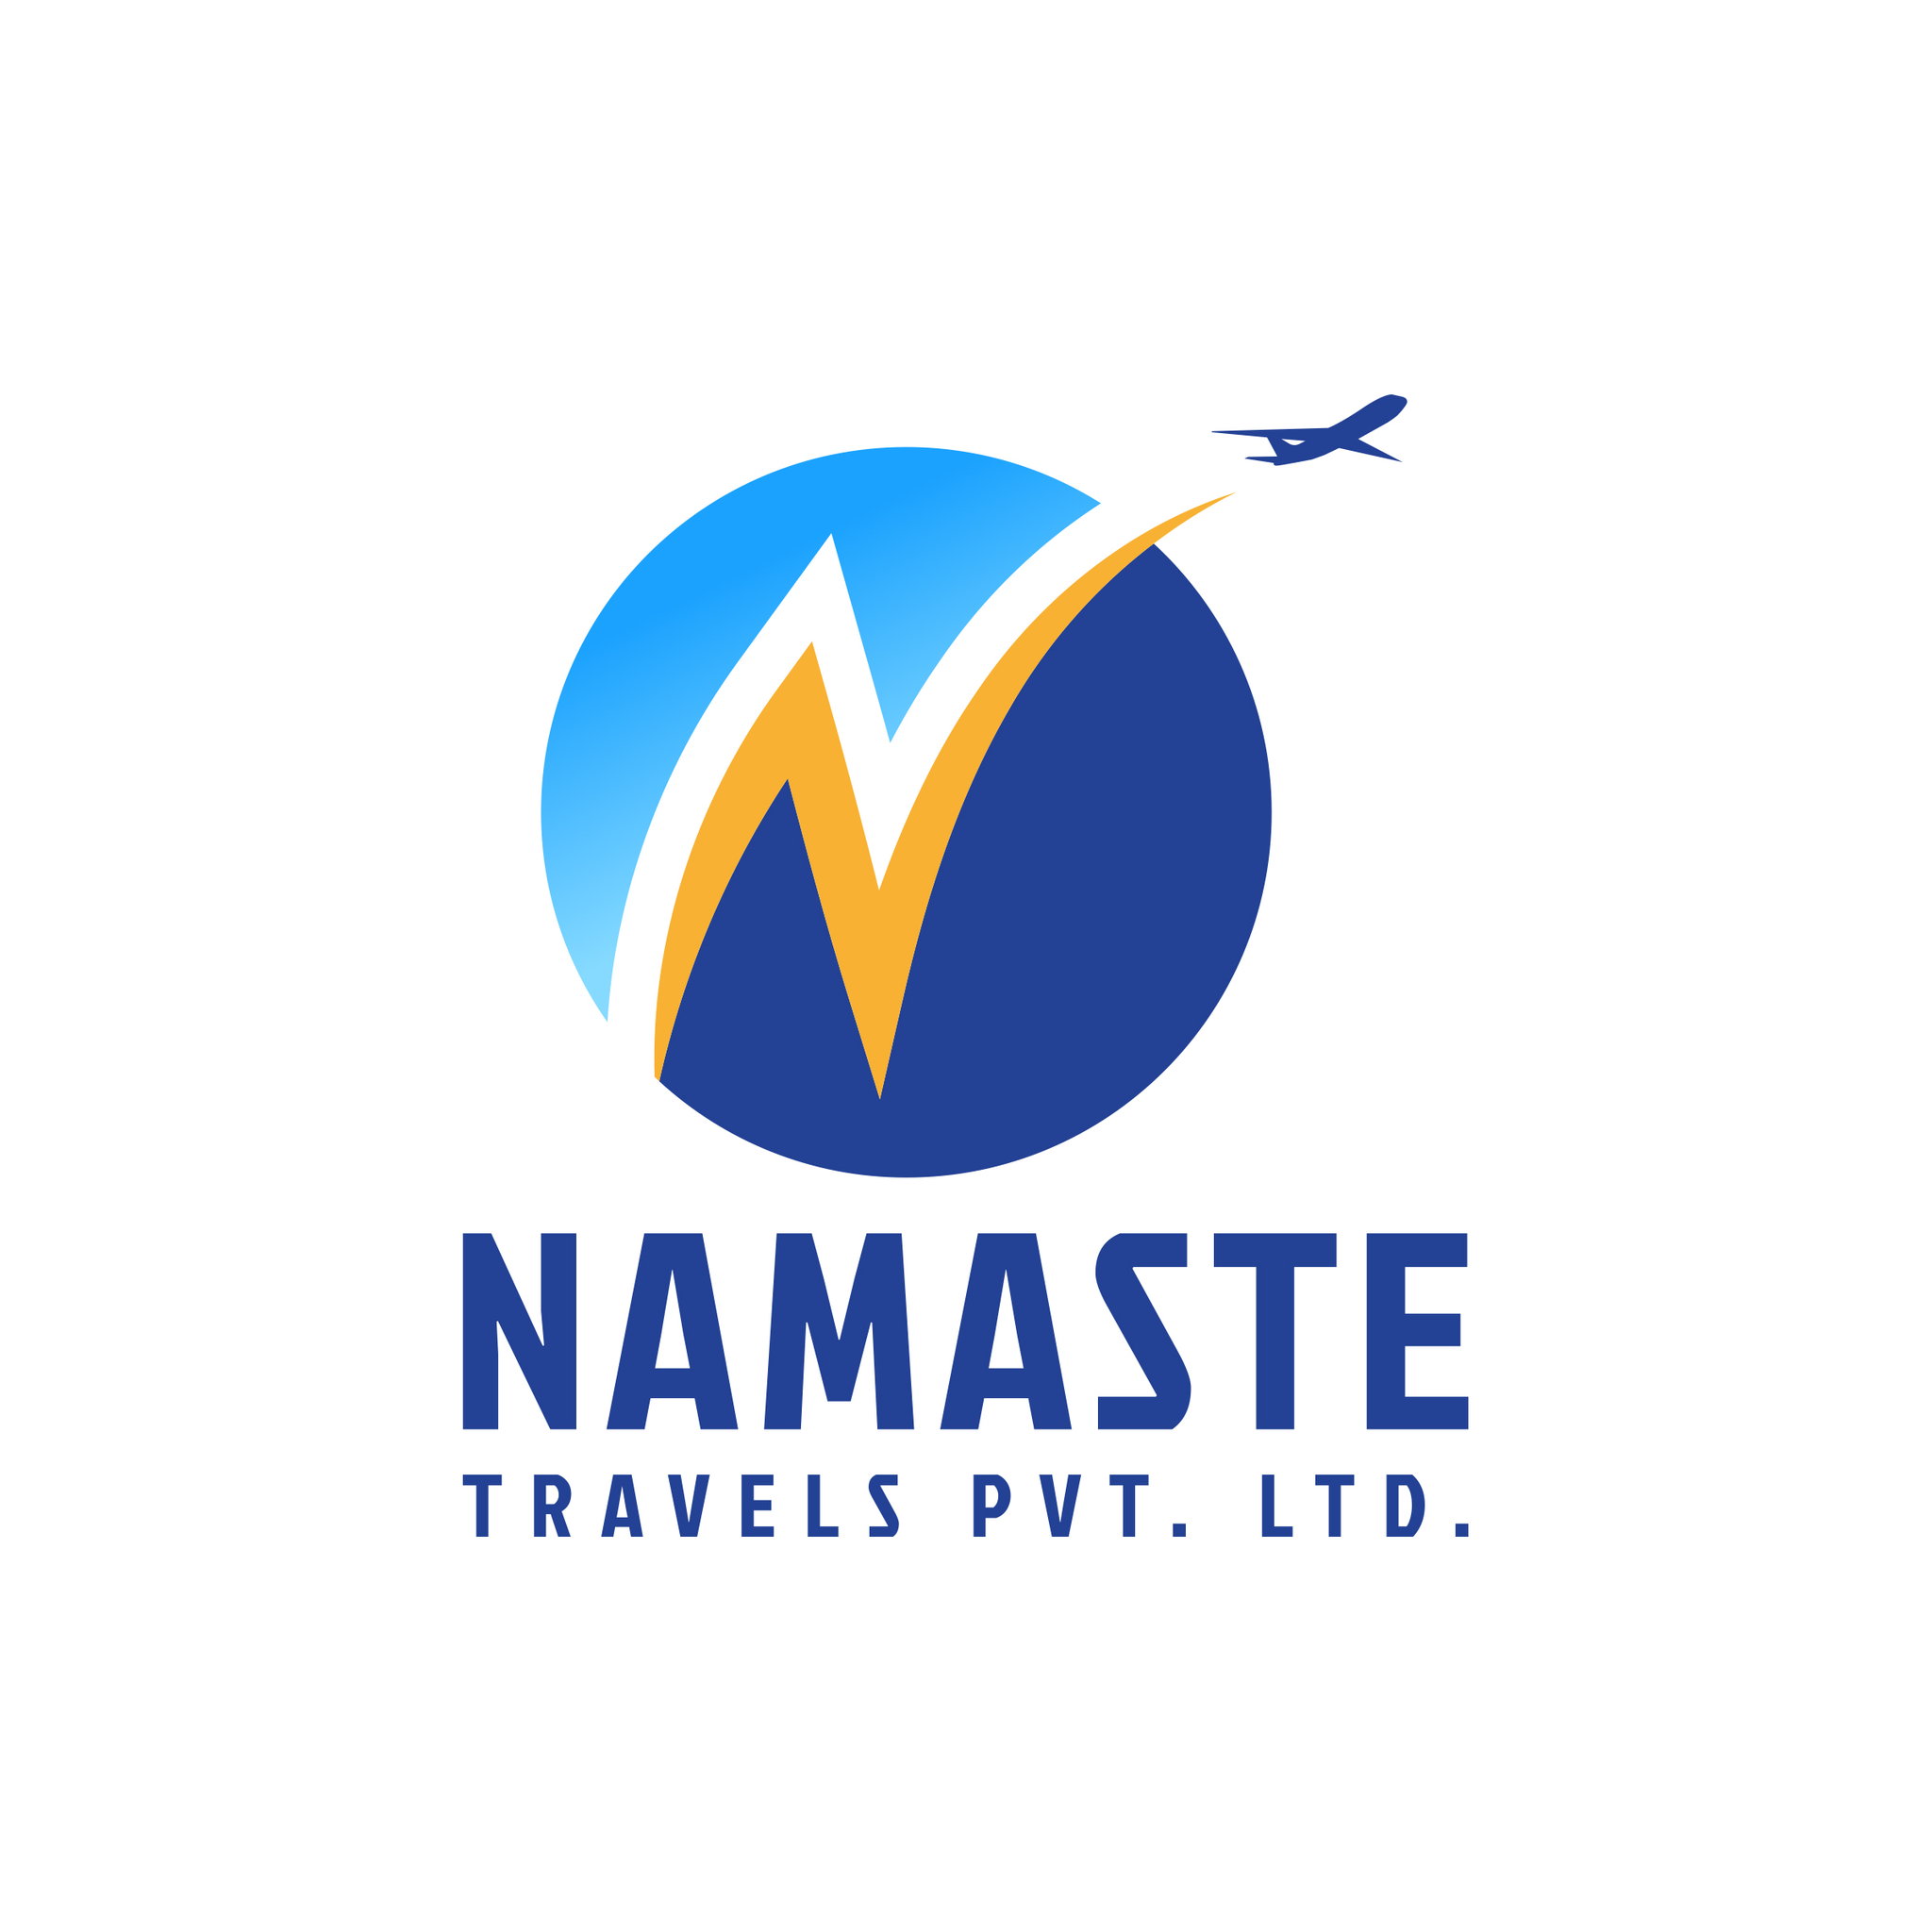 Namaste Nepal Travels & Tours